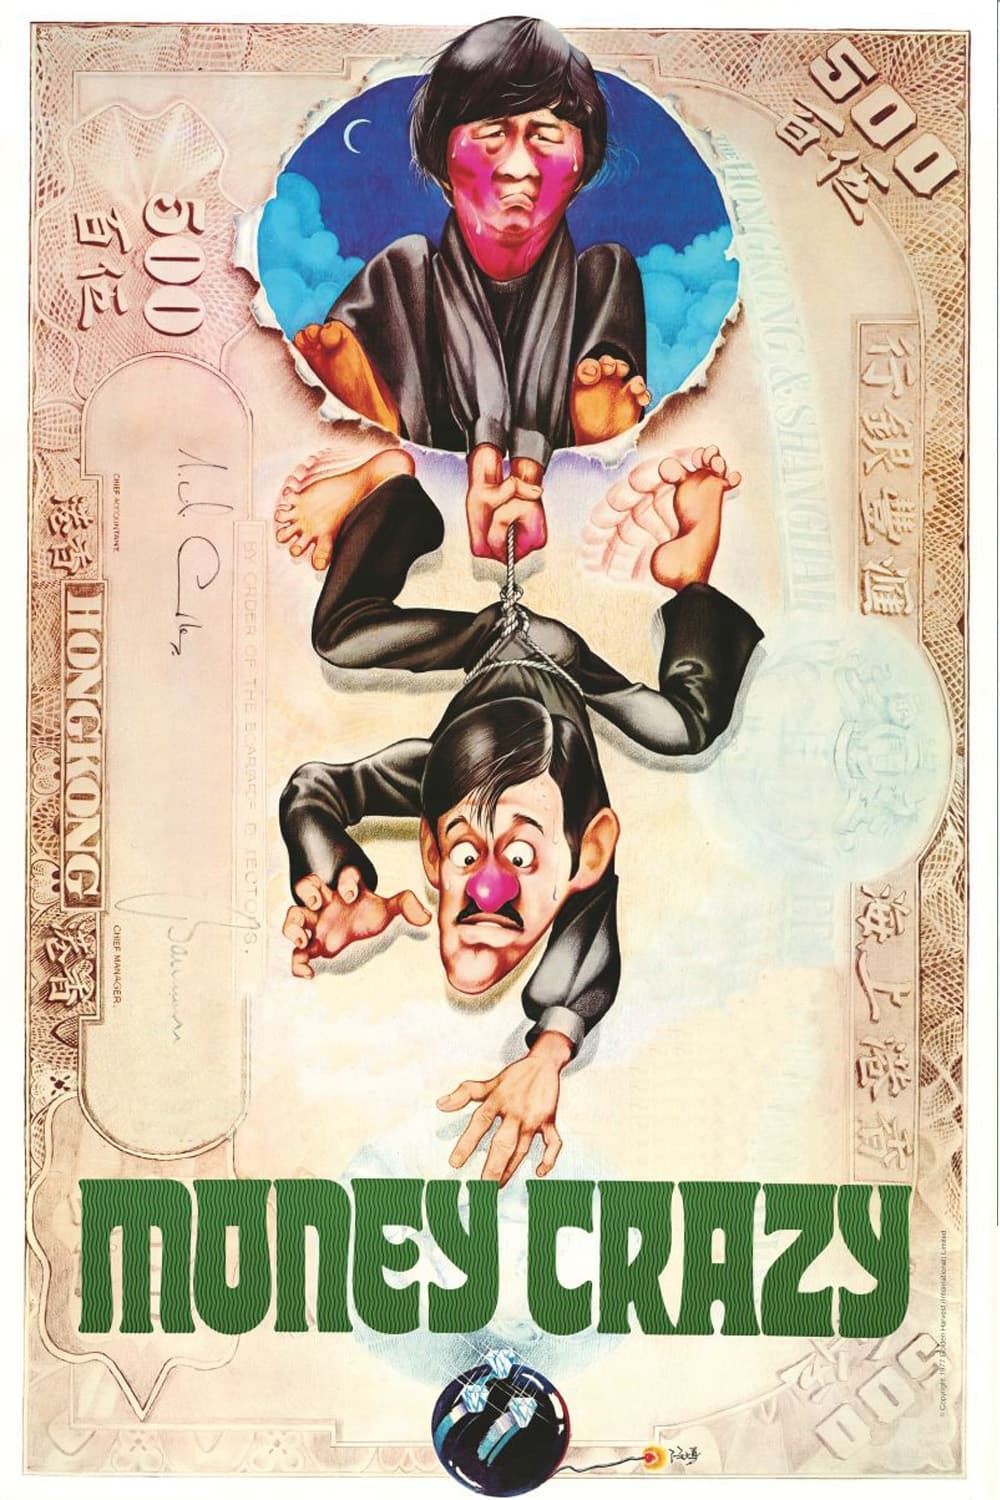 Money Crazy (1977)